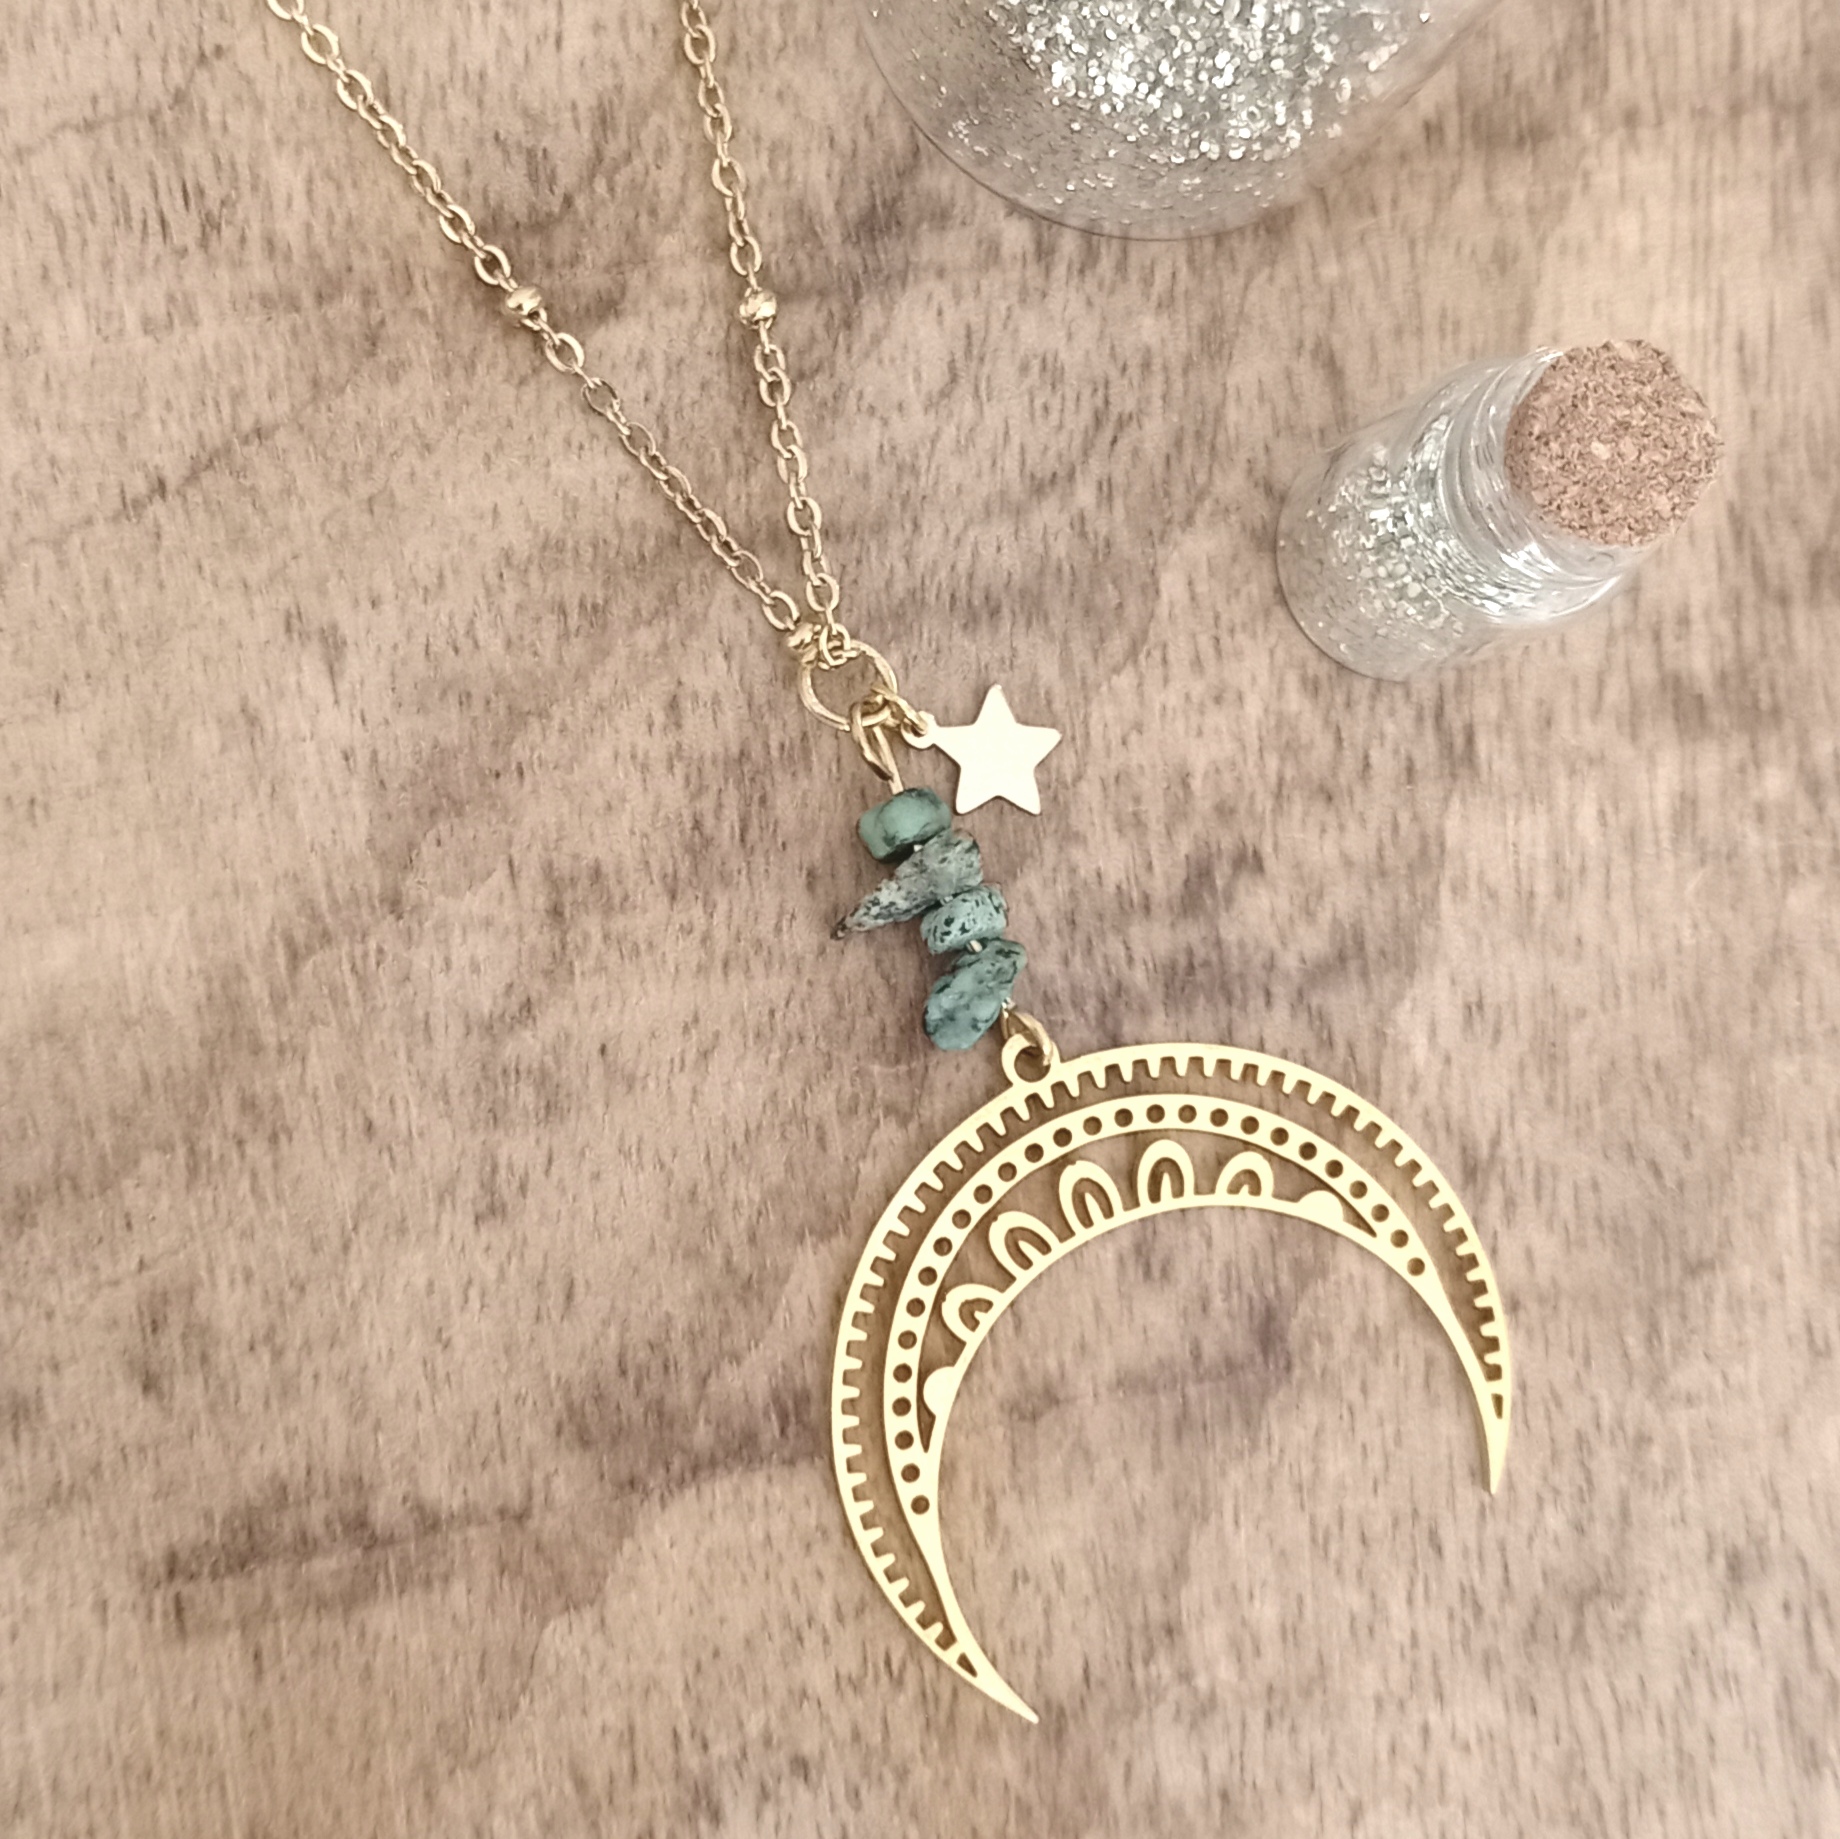 Sautoir Long en Chaîne Dorée, Turquoise Africaine et Pendentif Lune